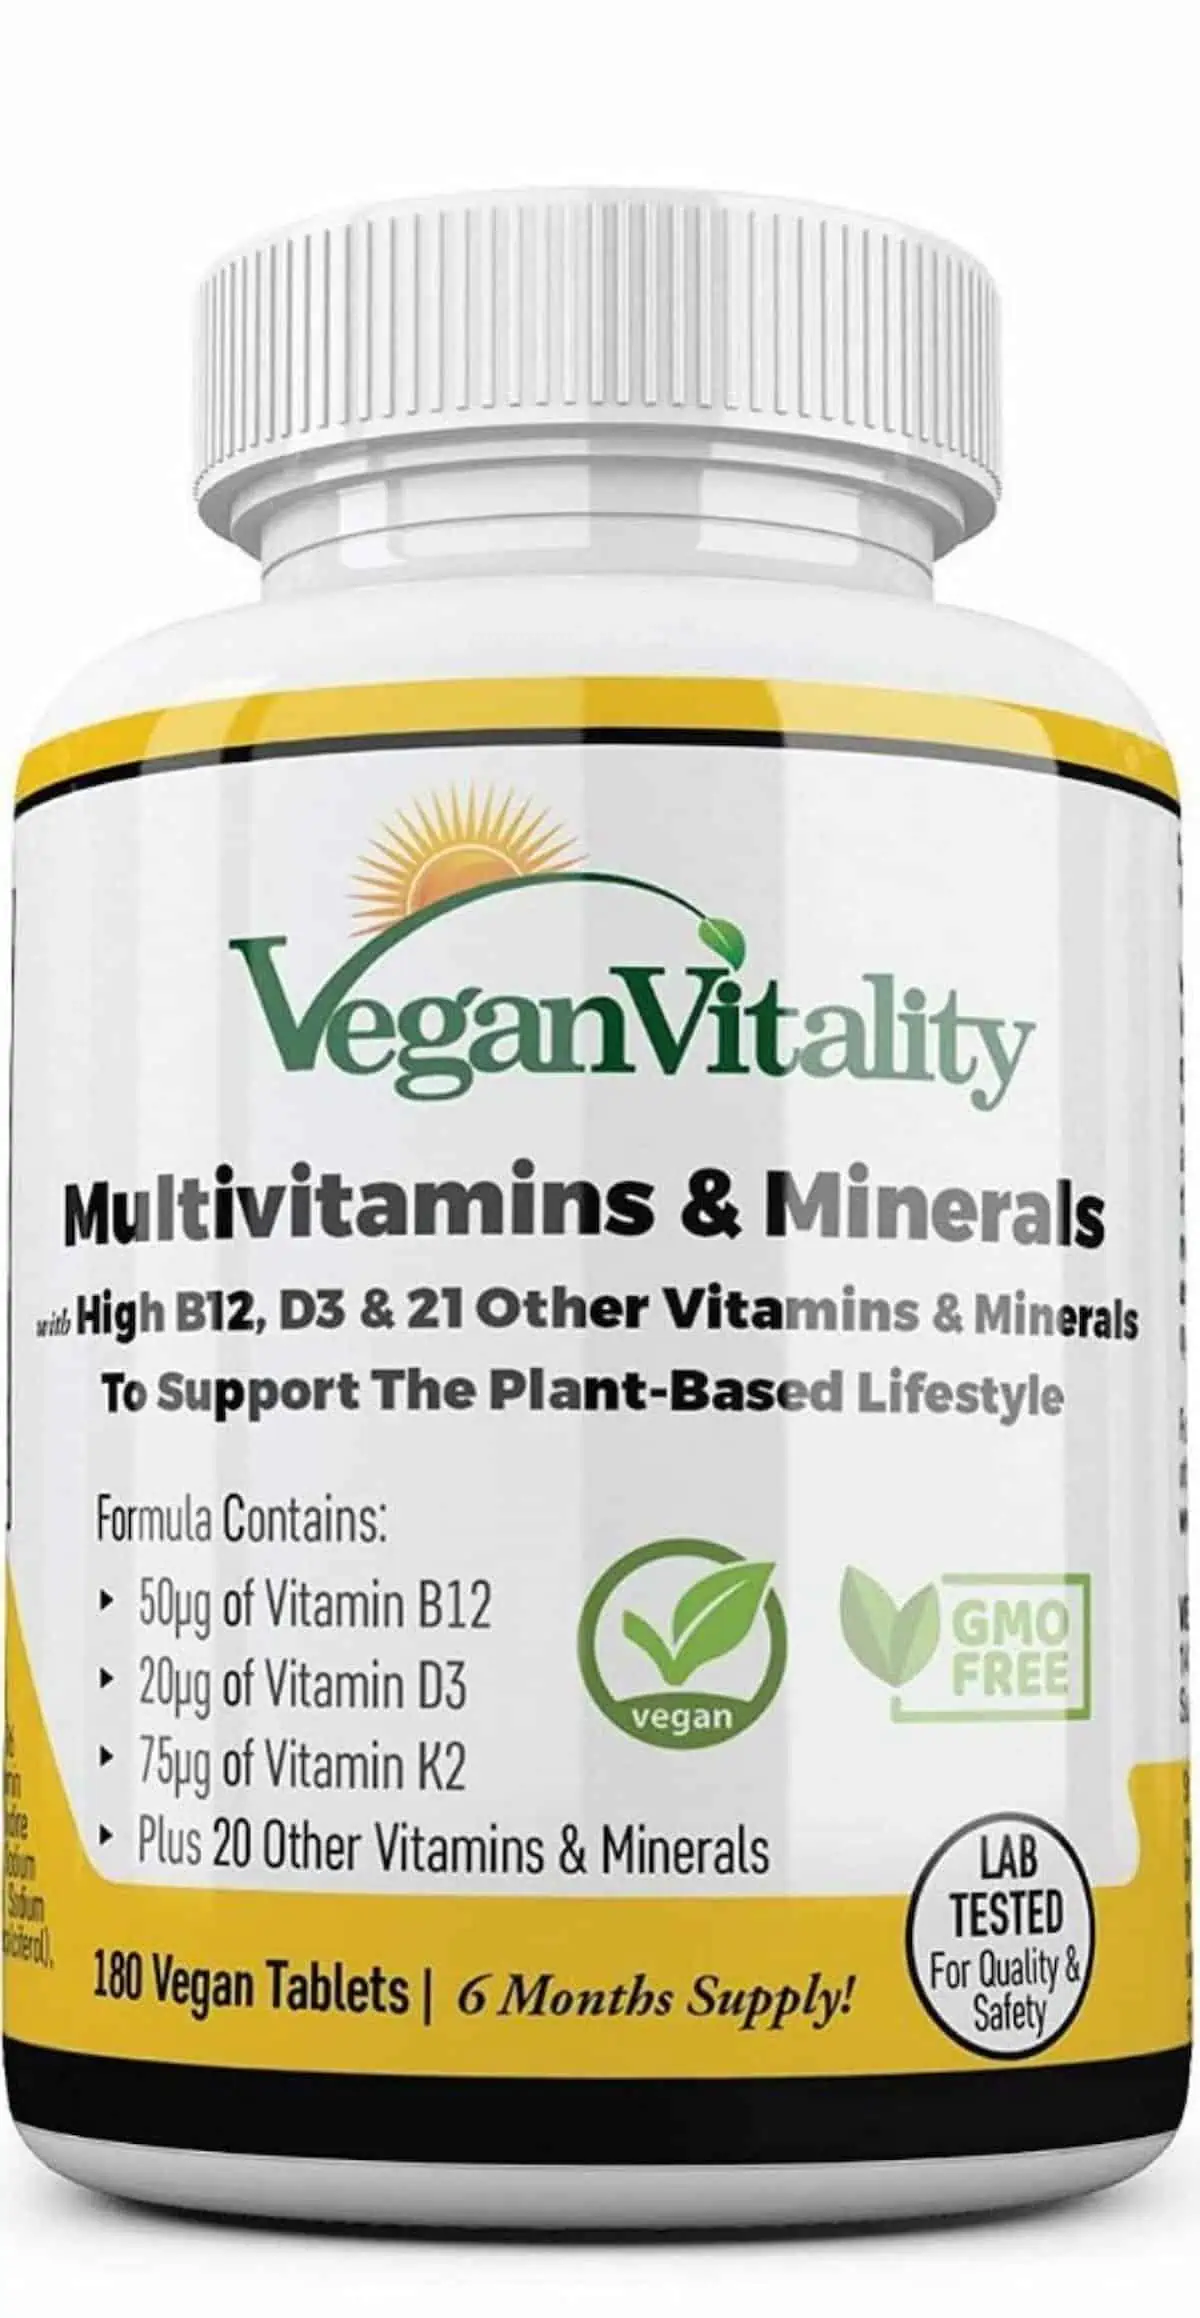 A bottle of Vegan Vitality brand multivitamins.